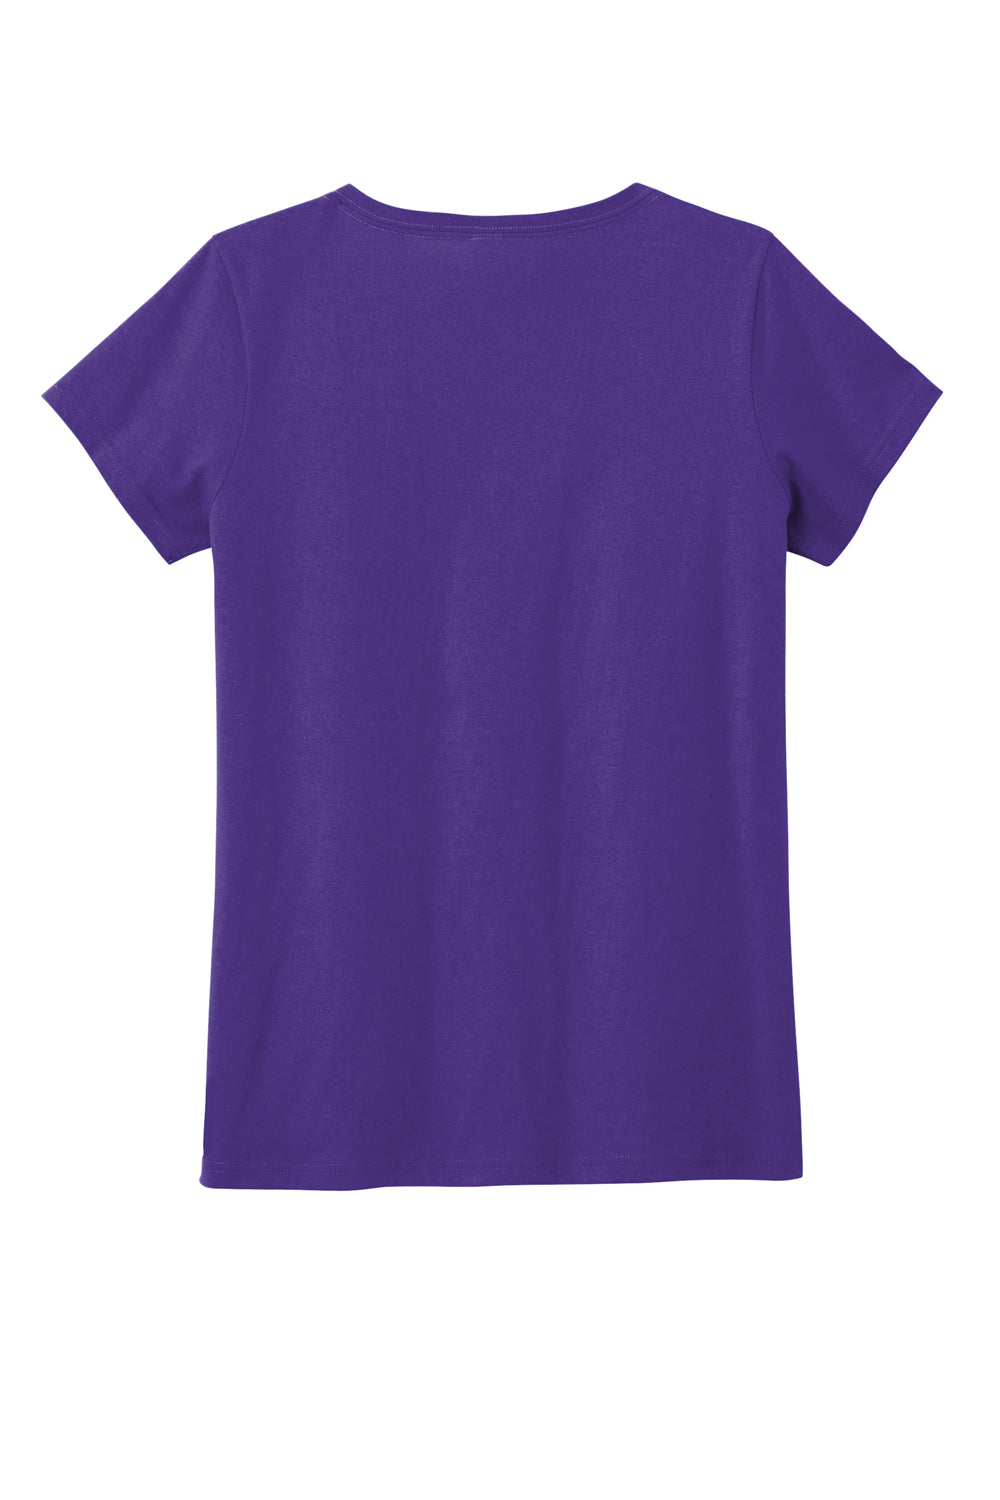 District DT5002 The Concert Short Sleeve V-Neck T-Shirt Purple Flat Back